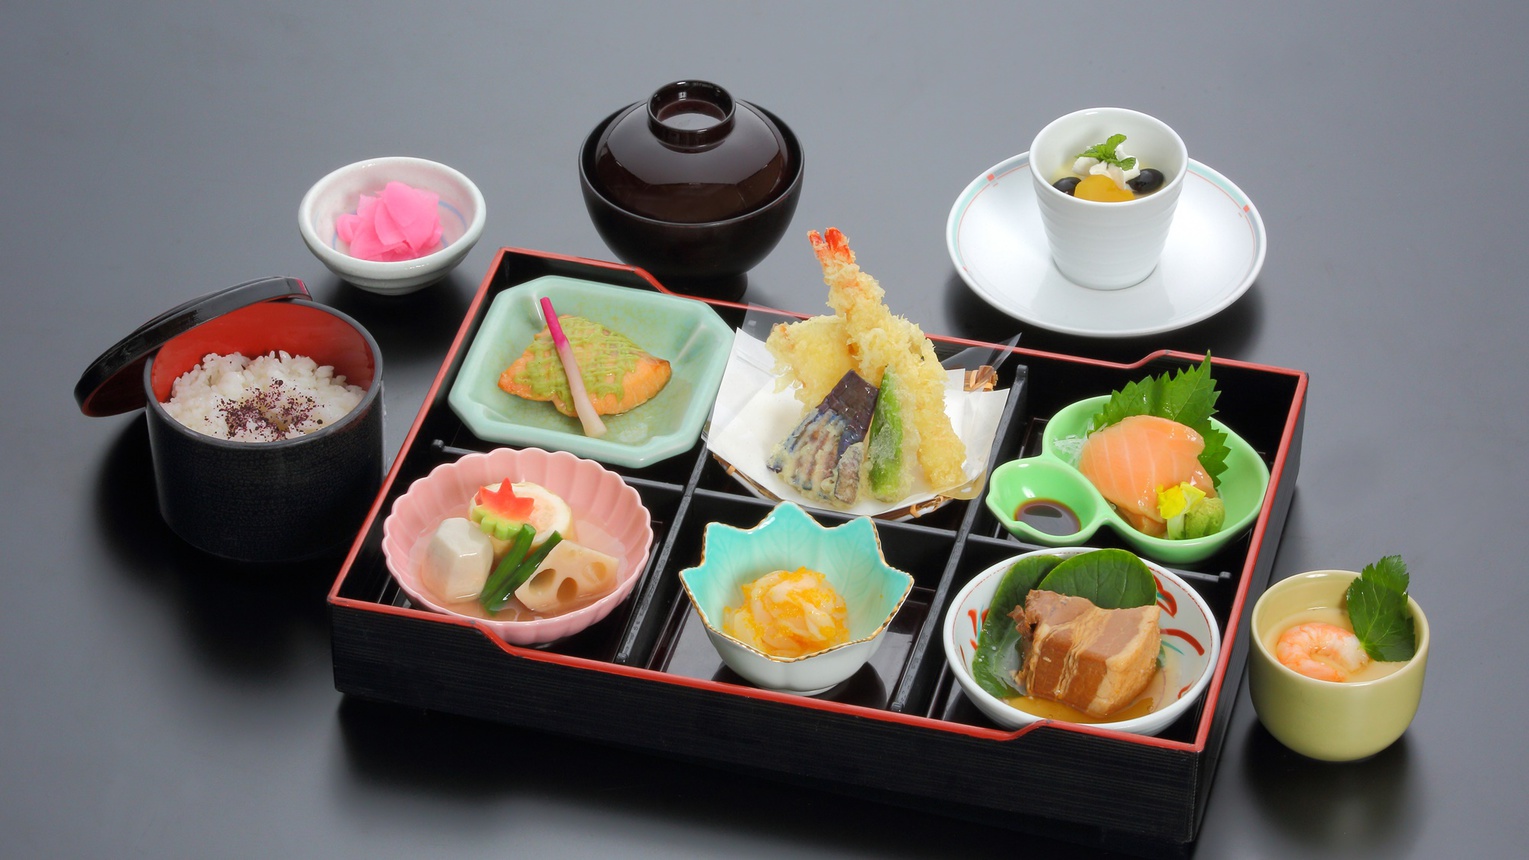 *日本料理 さくら「彩り箱膳 出世城」